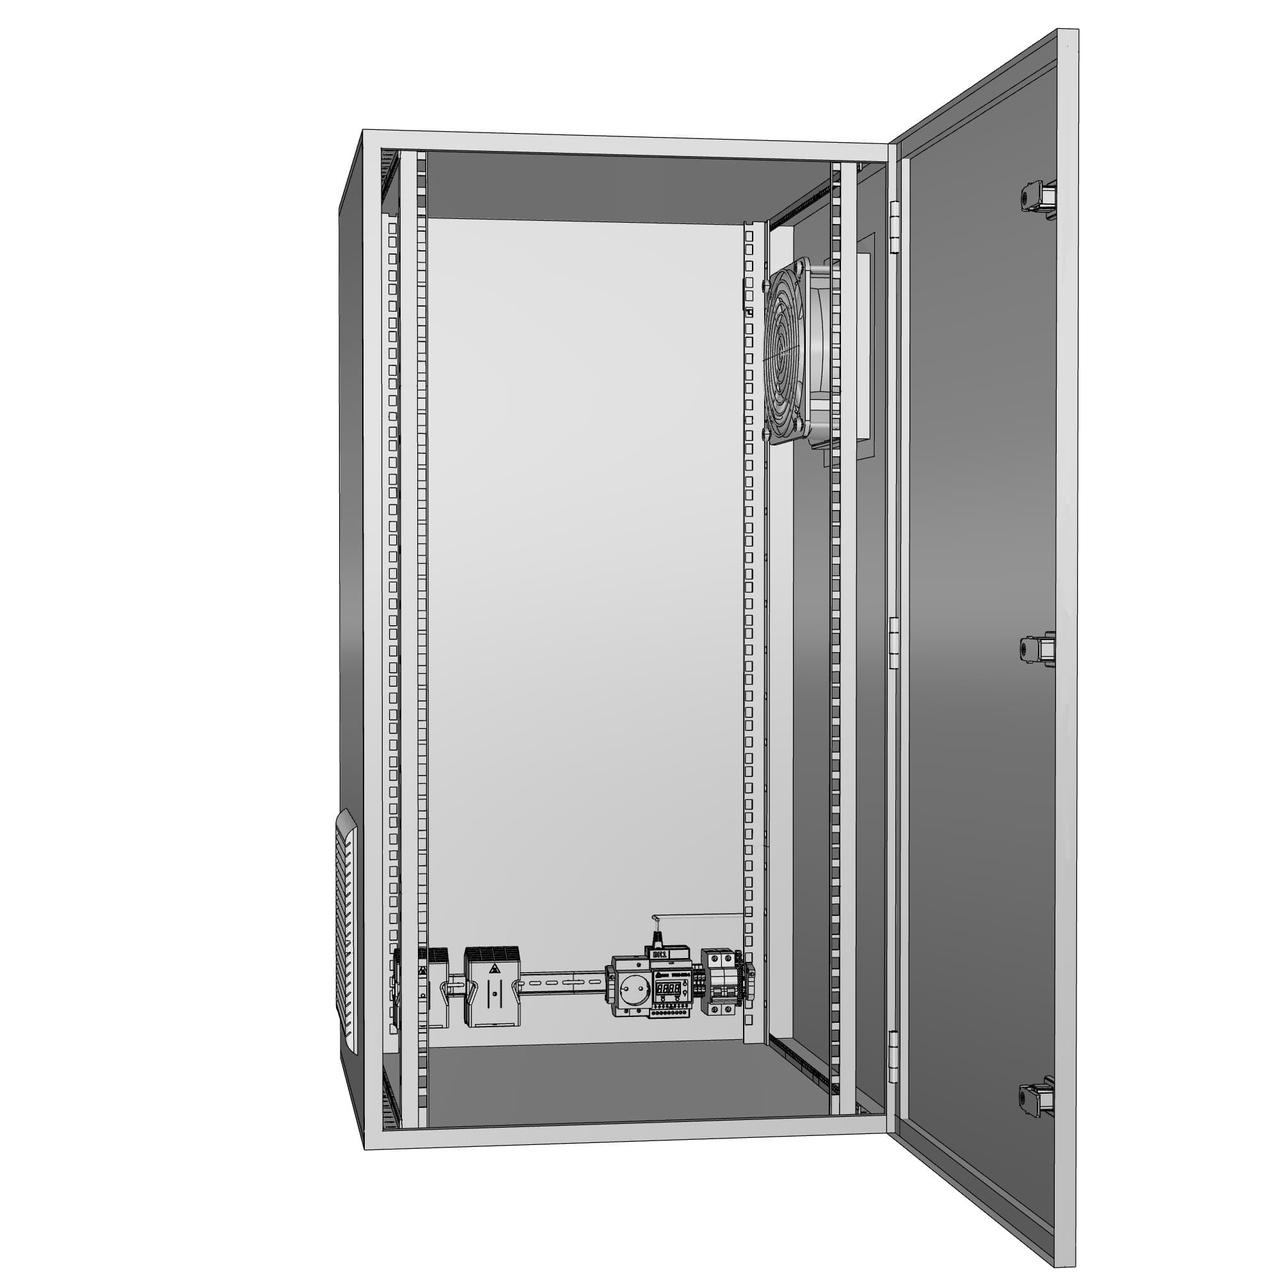 Шкаф климатический утеплённый с вентиляцией ЩКу- В- 1 - 400×300×200 (В×Ш×Г) IP65